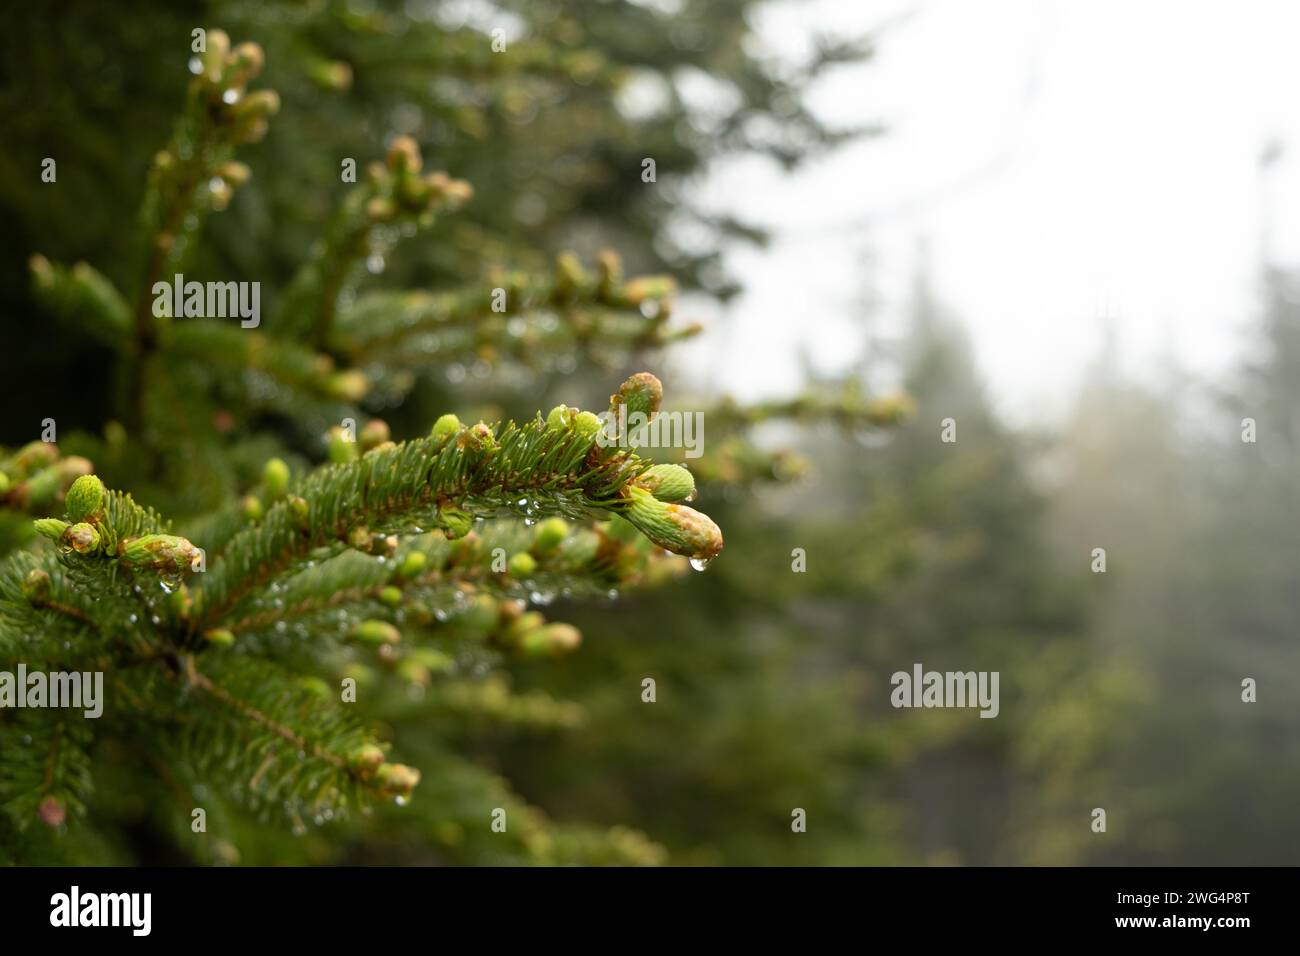 Nahaufnahme des neuen Tannenwuchses im Wald mit Tautropfen und nebeligem Hintergrund, der die Umgebung und Umgebung zeigt. Stockfoto